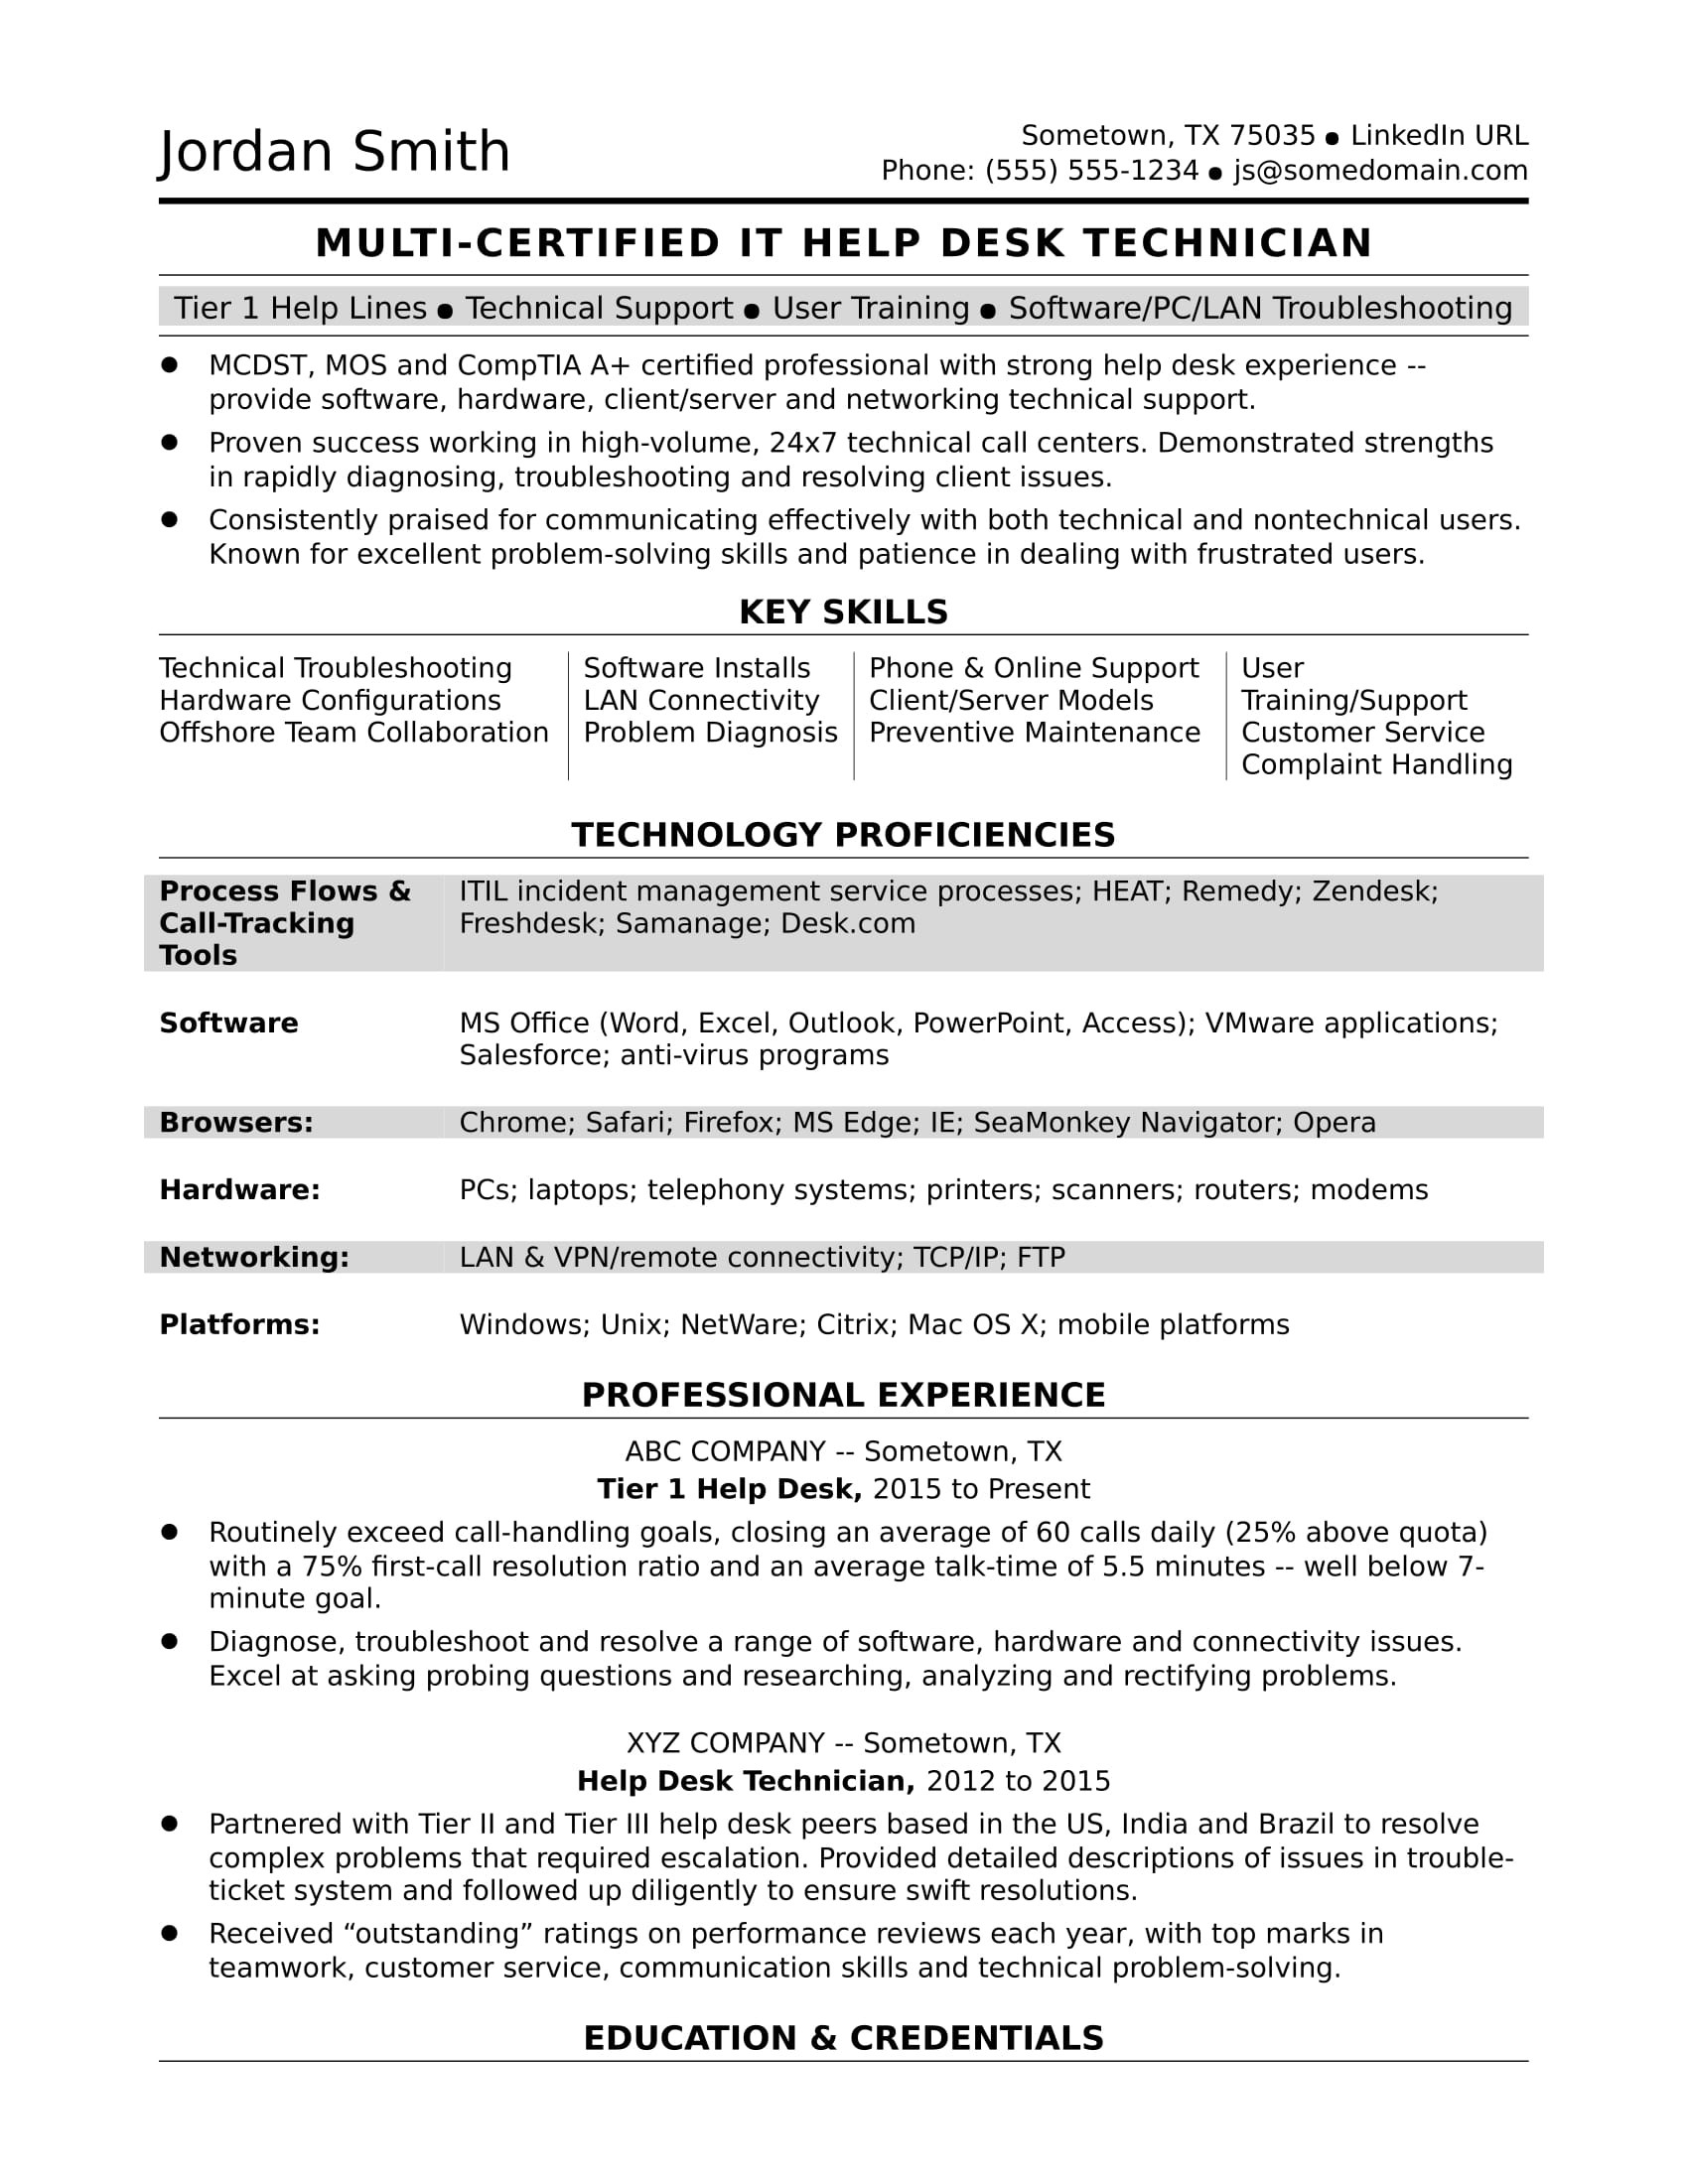 Tier 1 Help Desk Resume Sample Sample Resume for A Midlevel It Help Desk Professional Monster.com